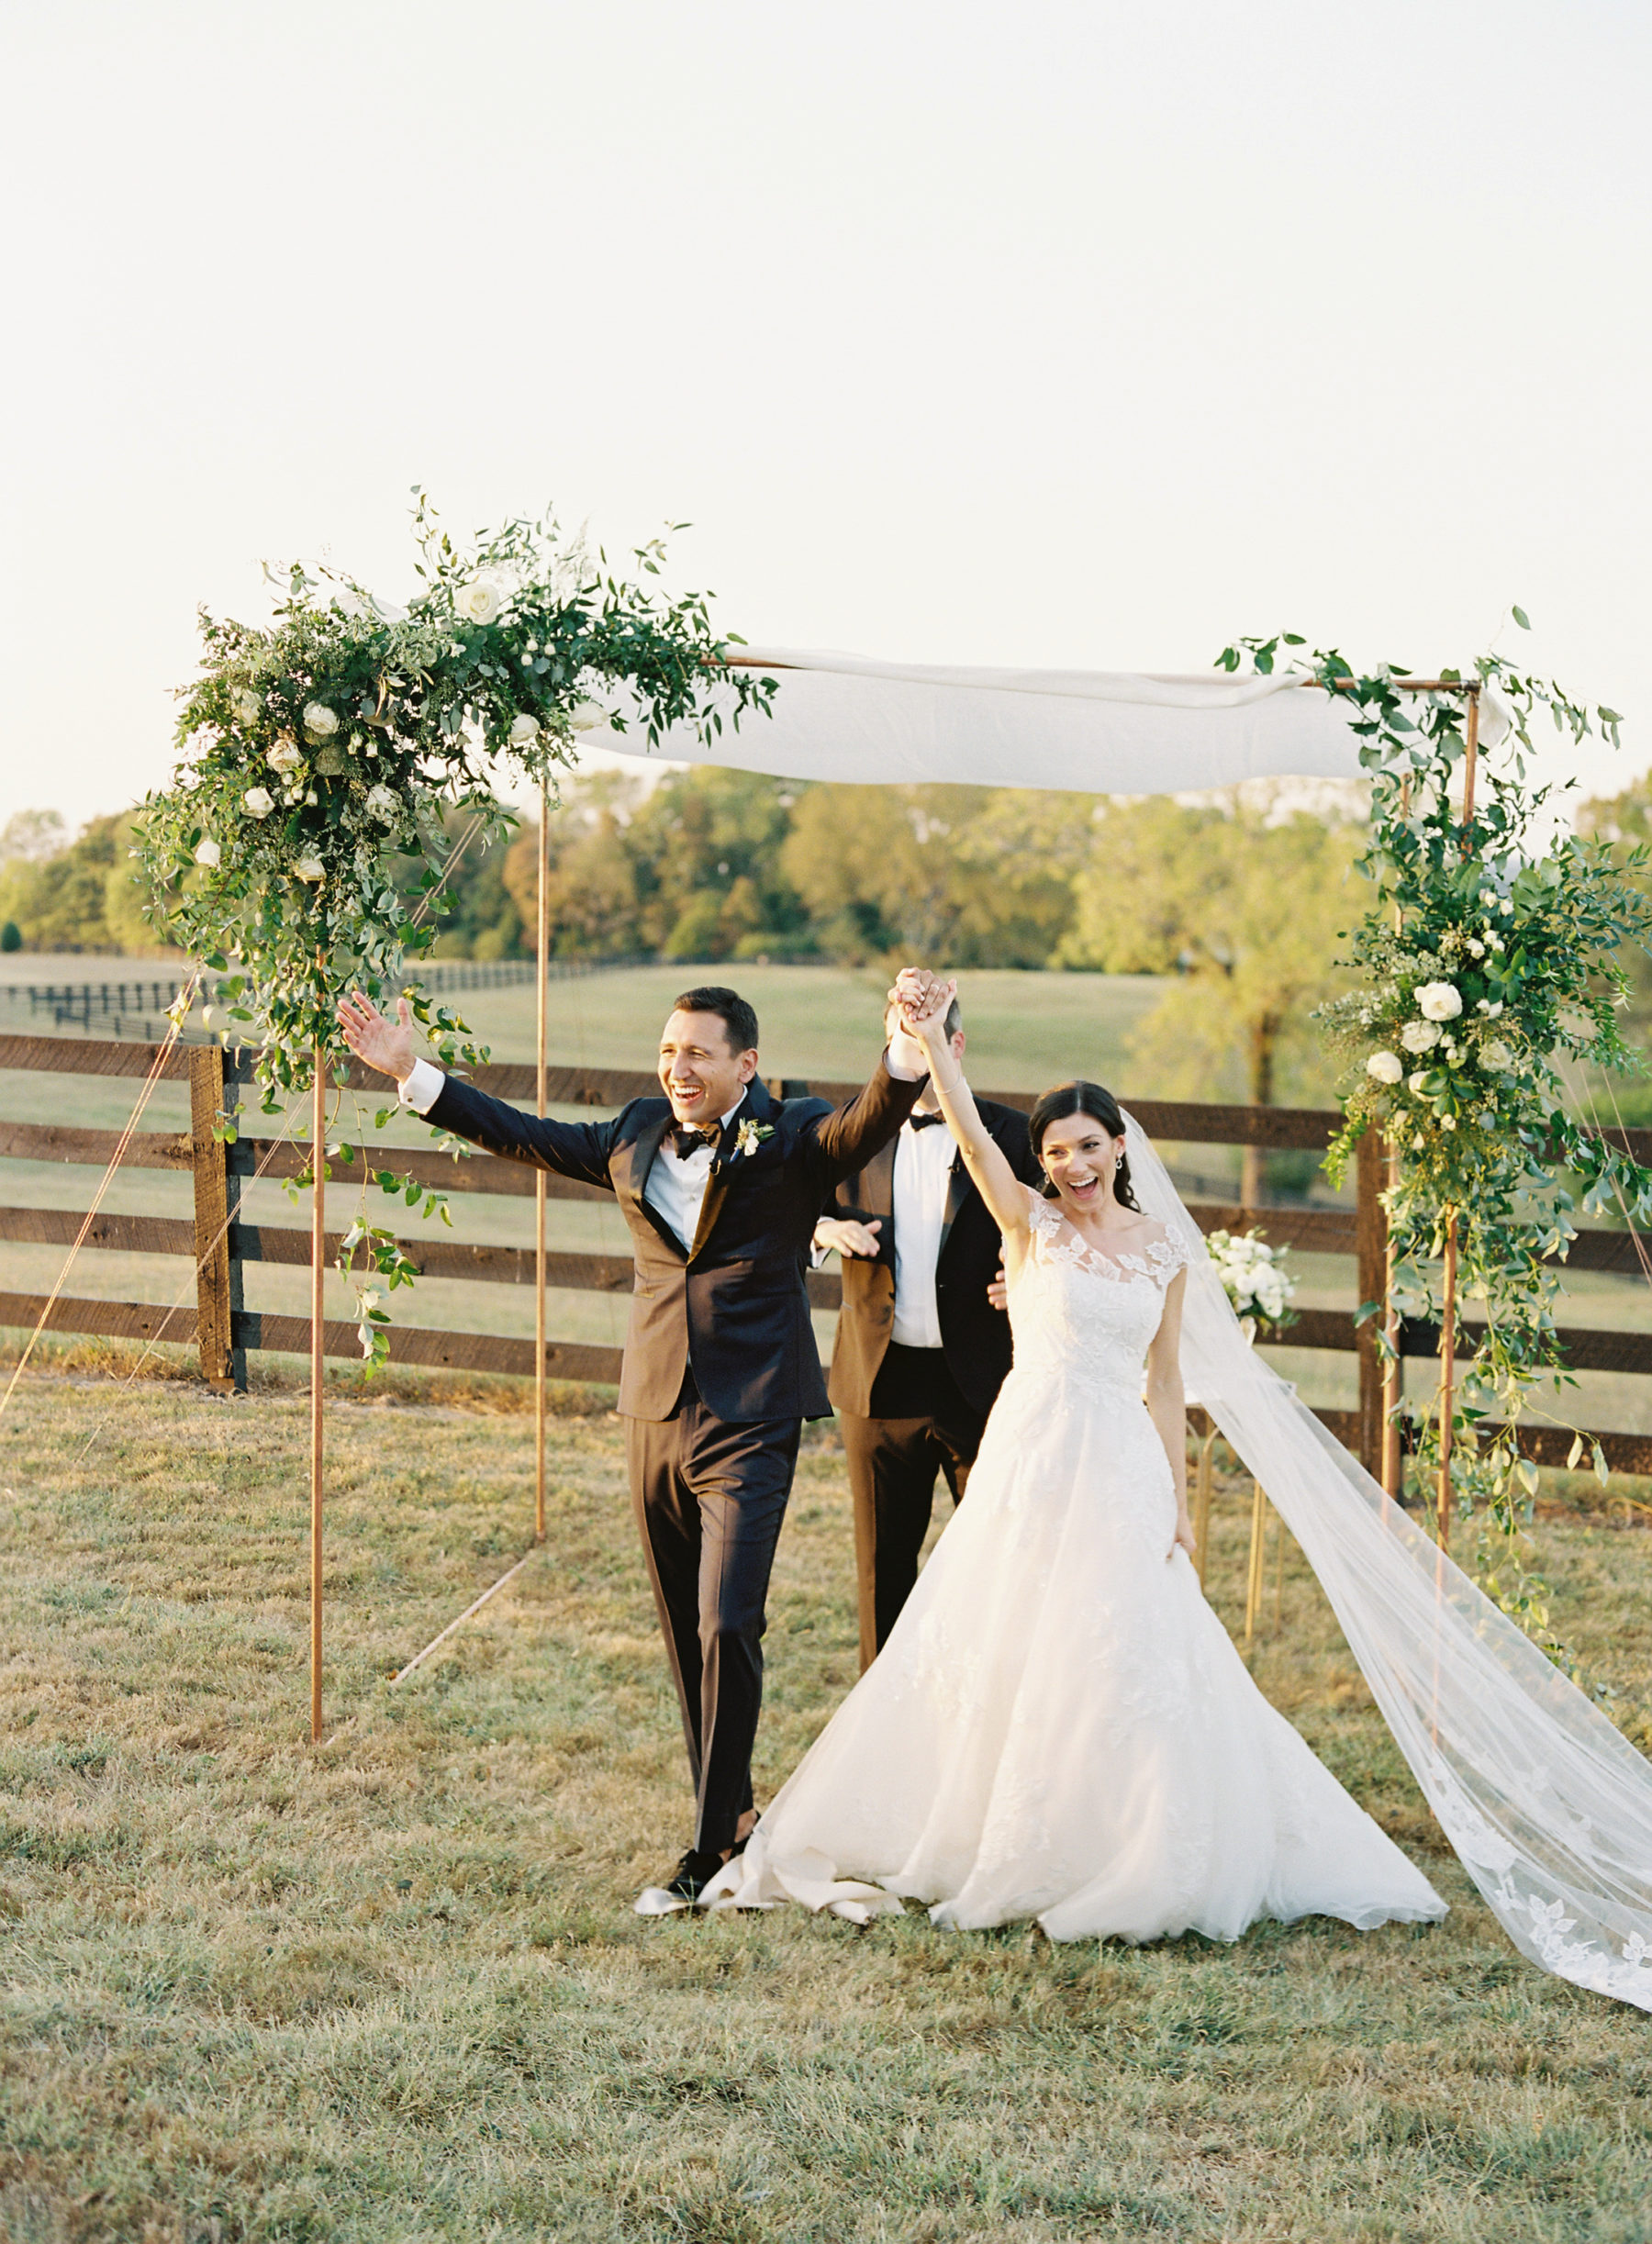 Modern outdoor Nashville wedding featured on Nashville Bride Guide